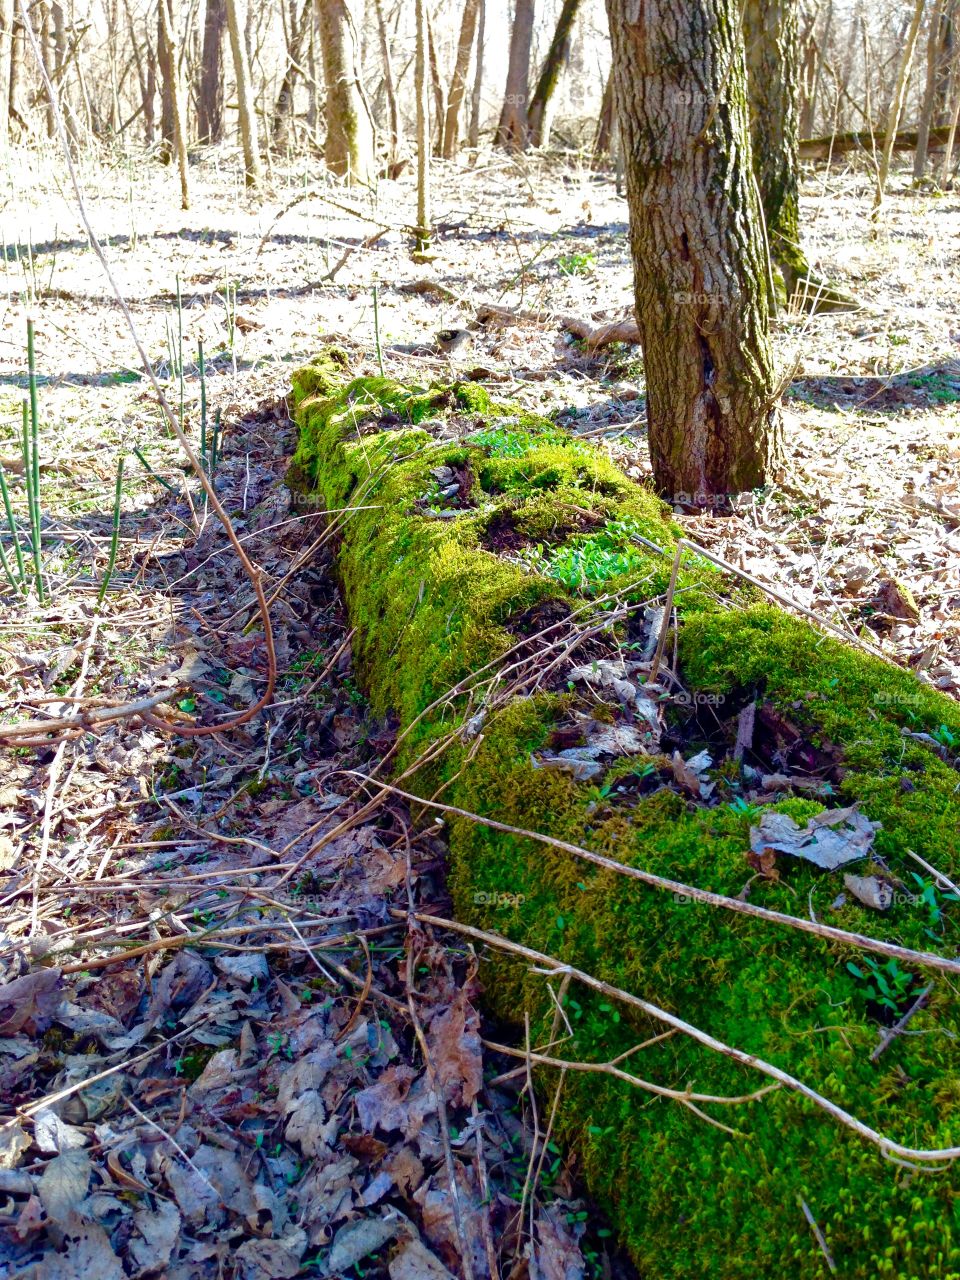 Moss on a log